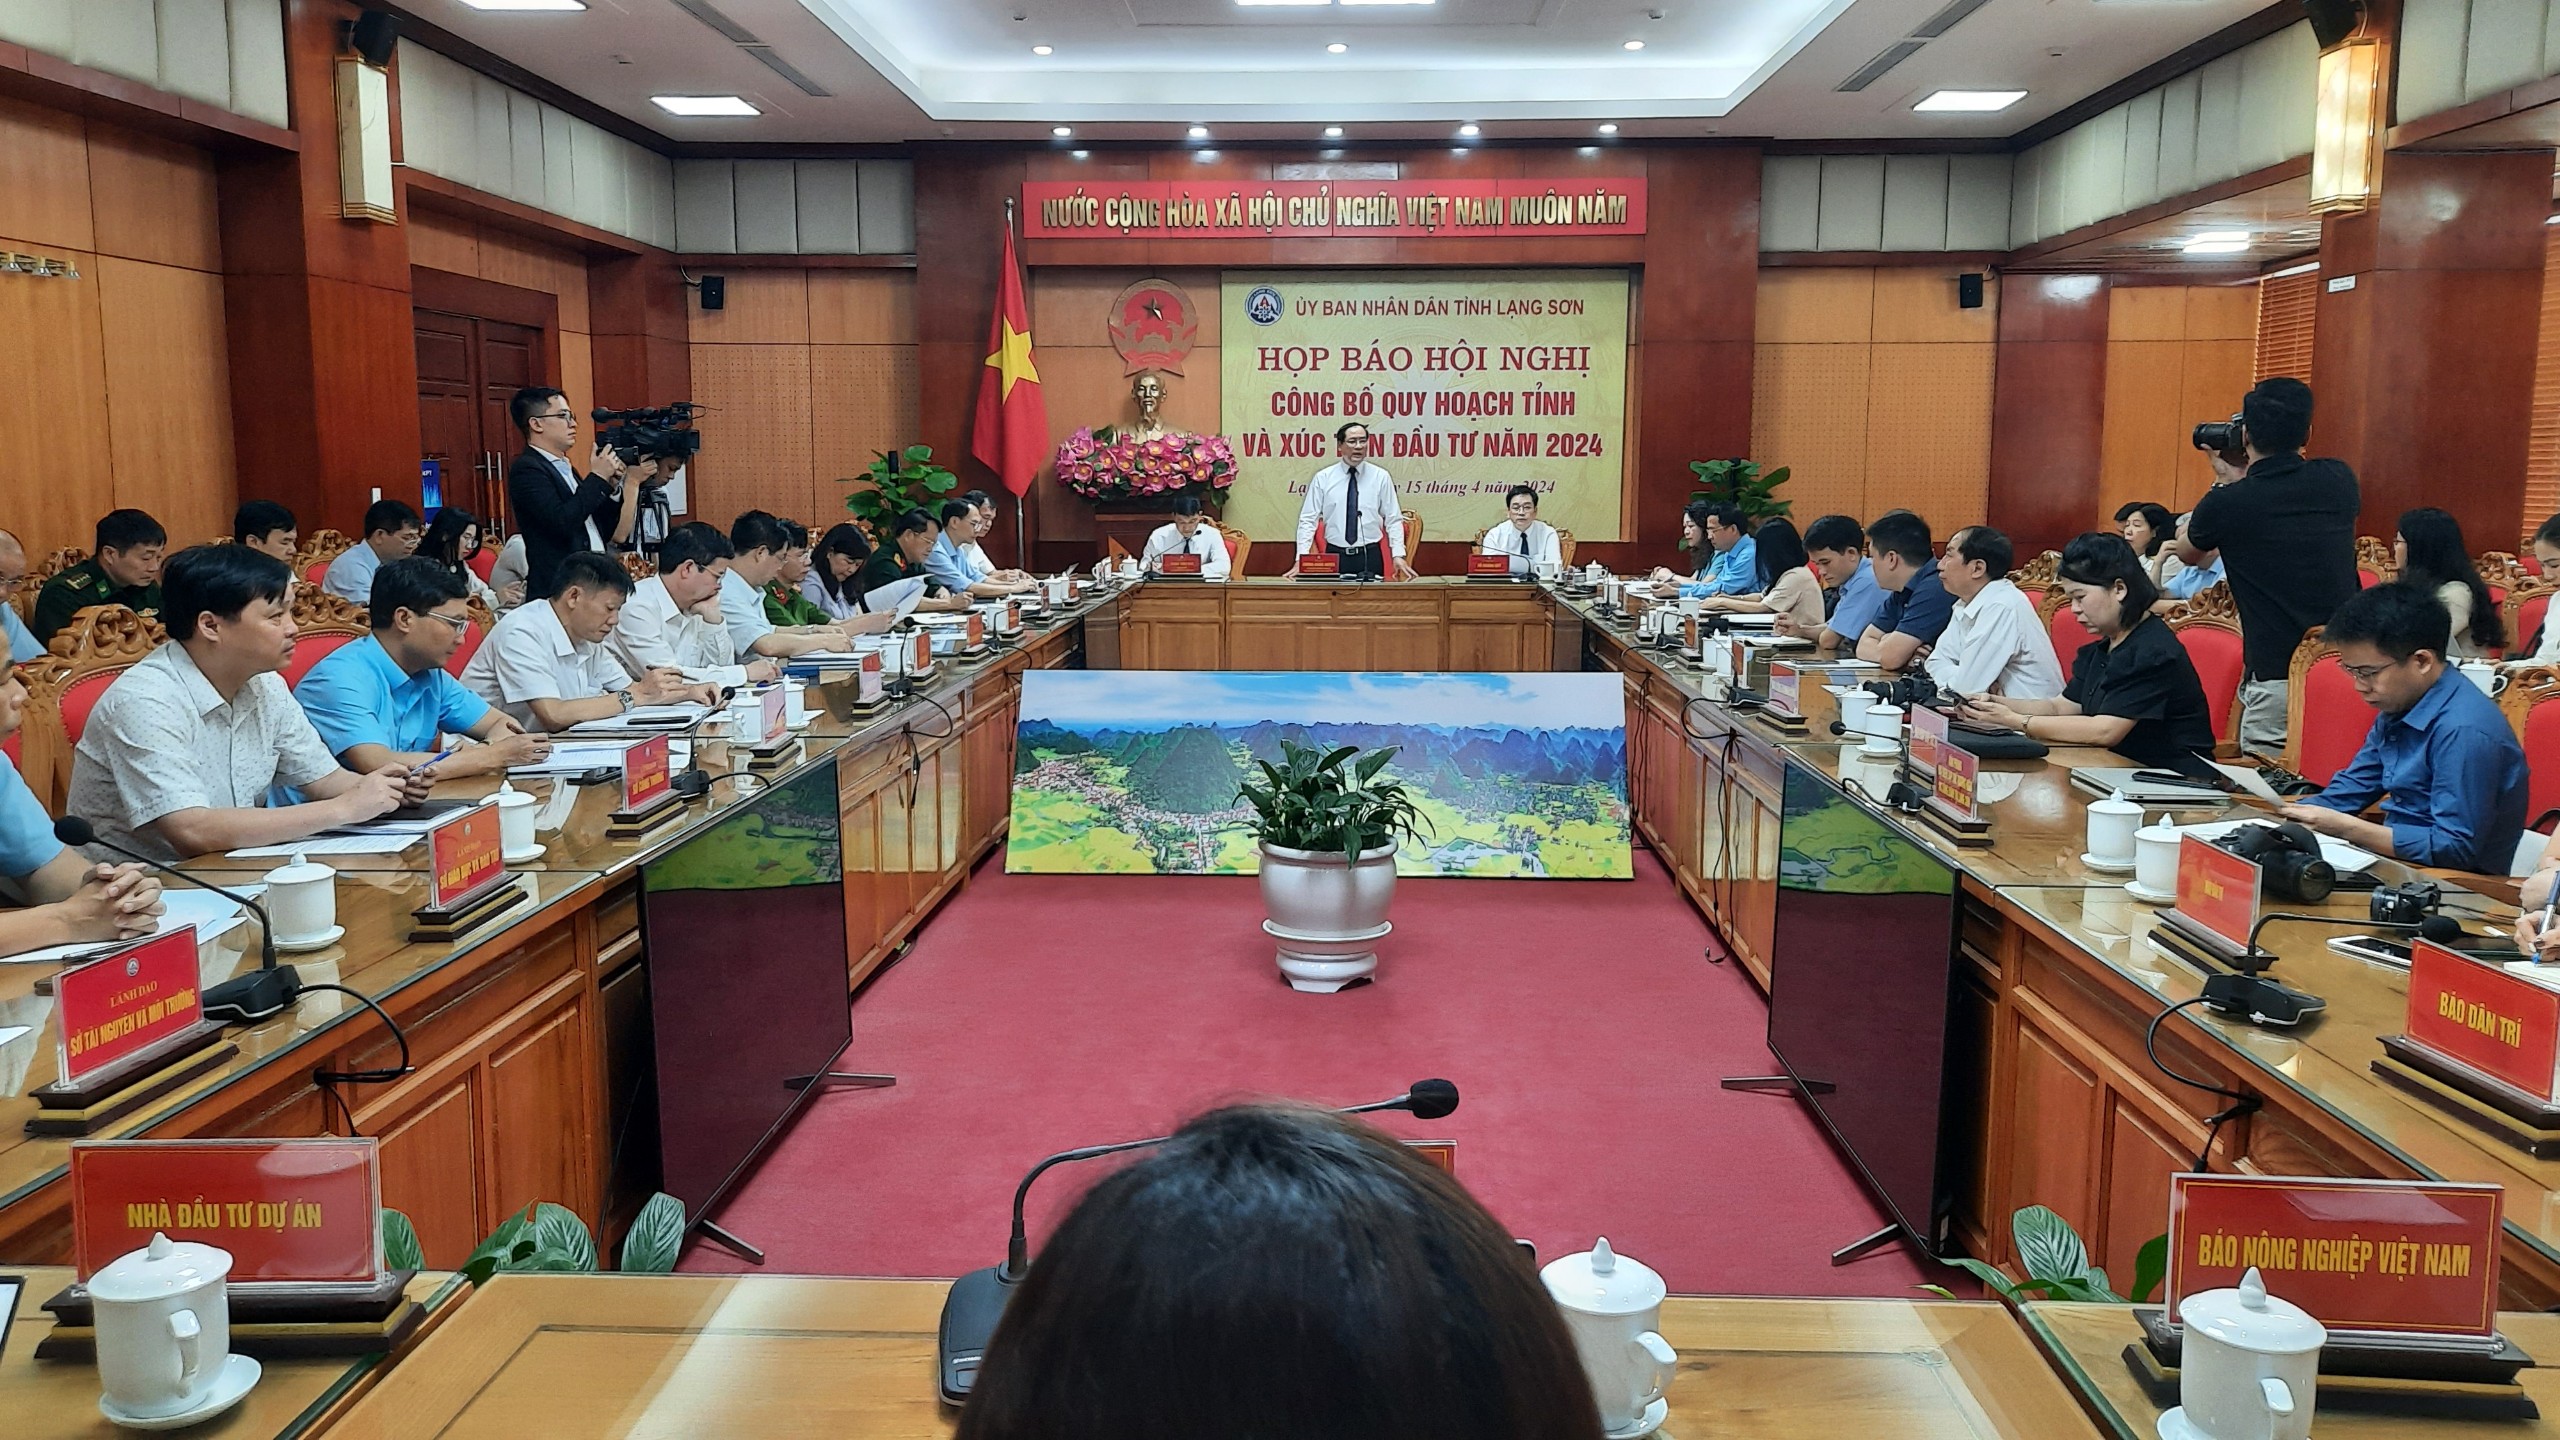 Lạng Sơn công bố Quy hoạch tỉnh và xúc tiến đầu tư năm 2024: Trao 14 chứng nhận với tổng vốn hơn 18.600 tỷ đồng- Ảnh 2.